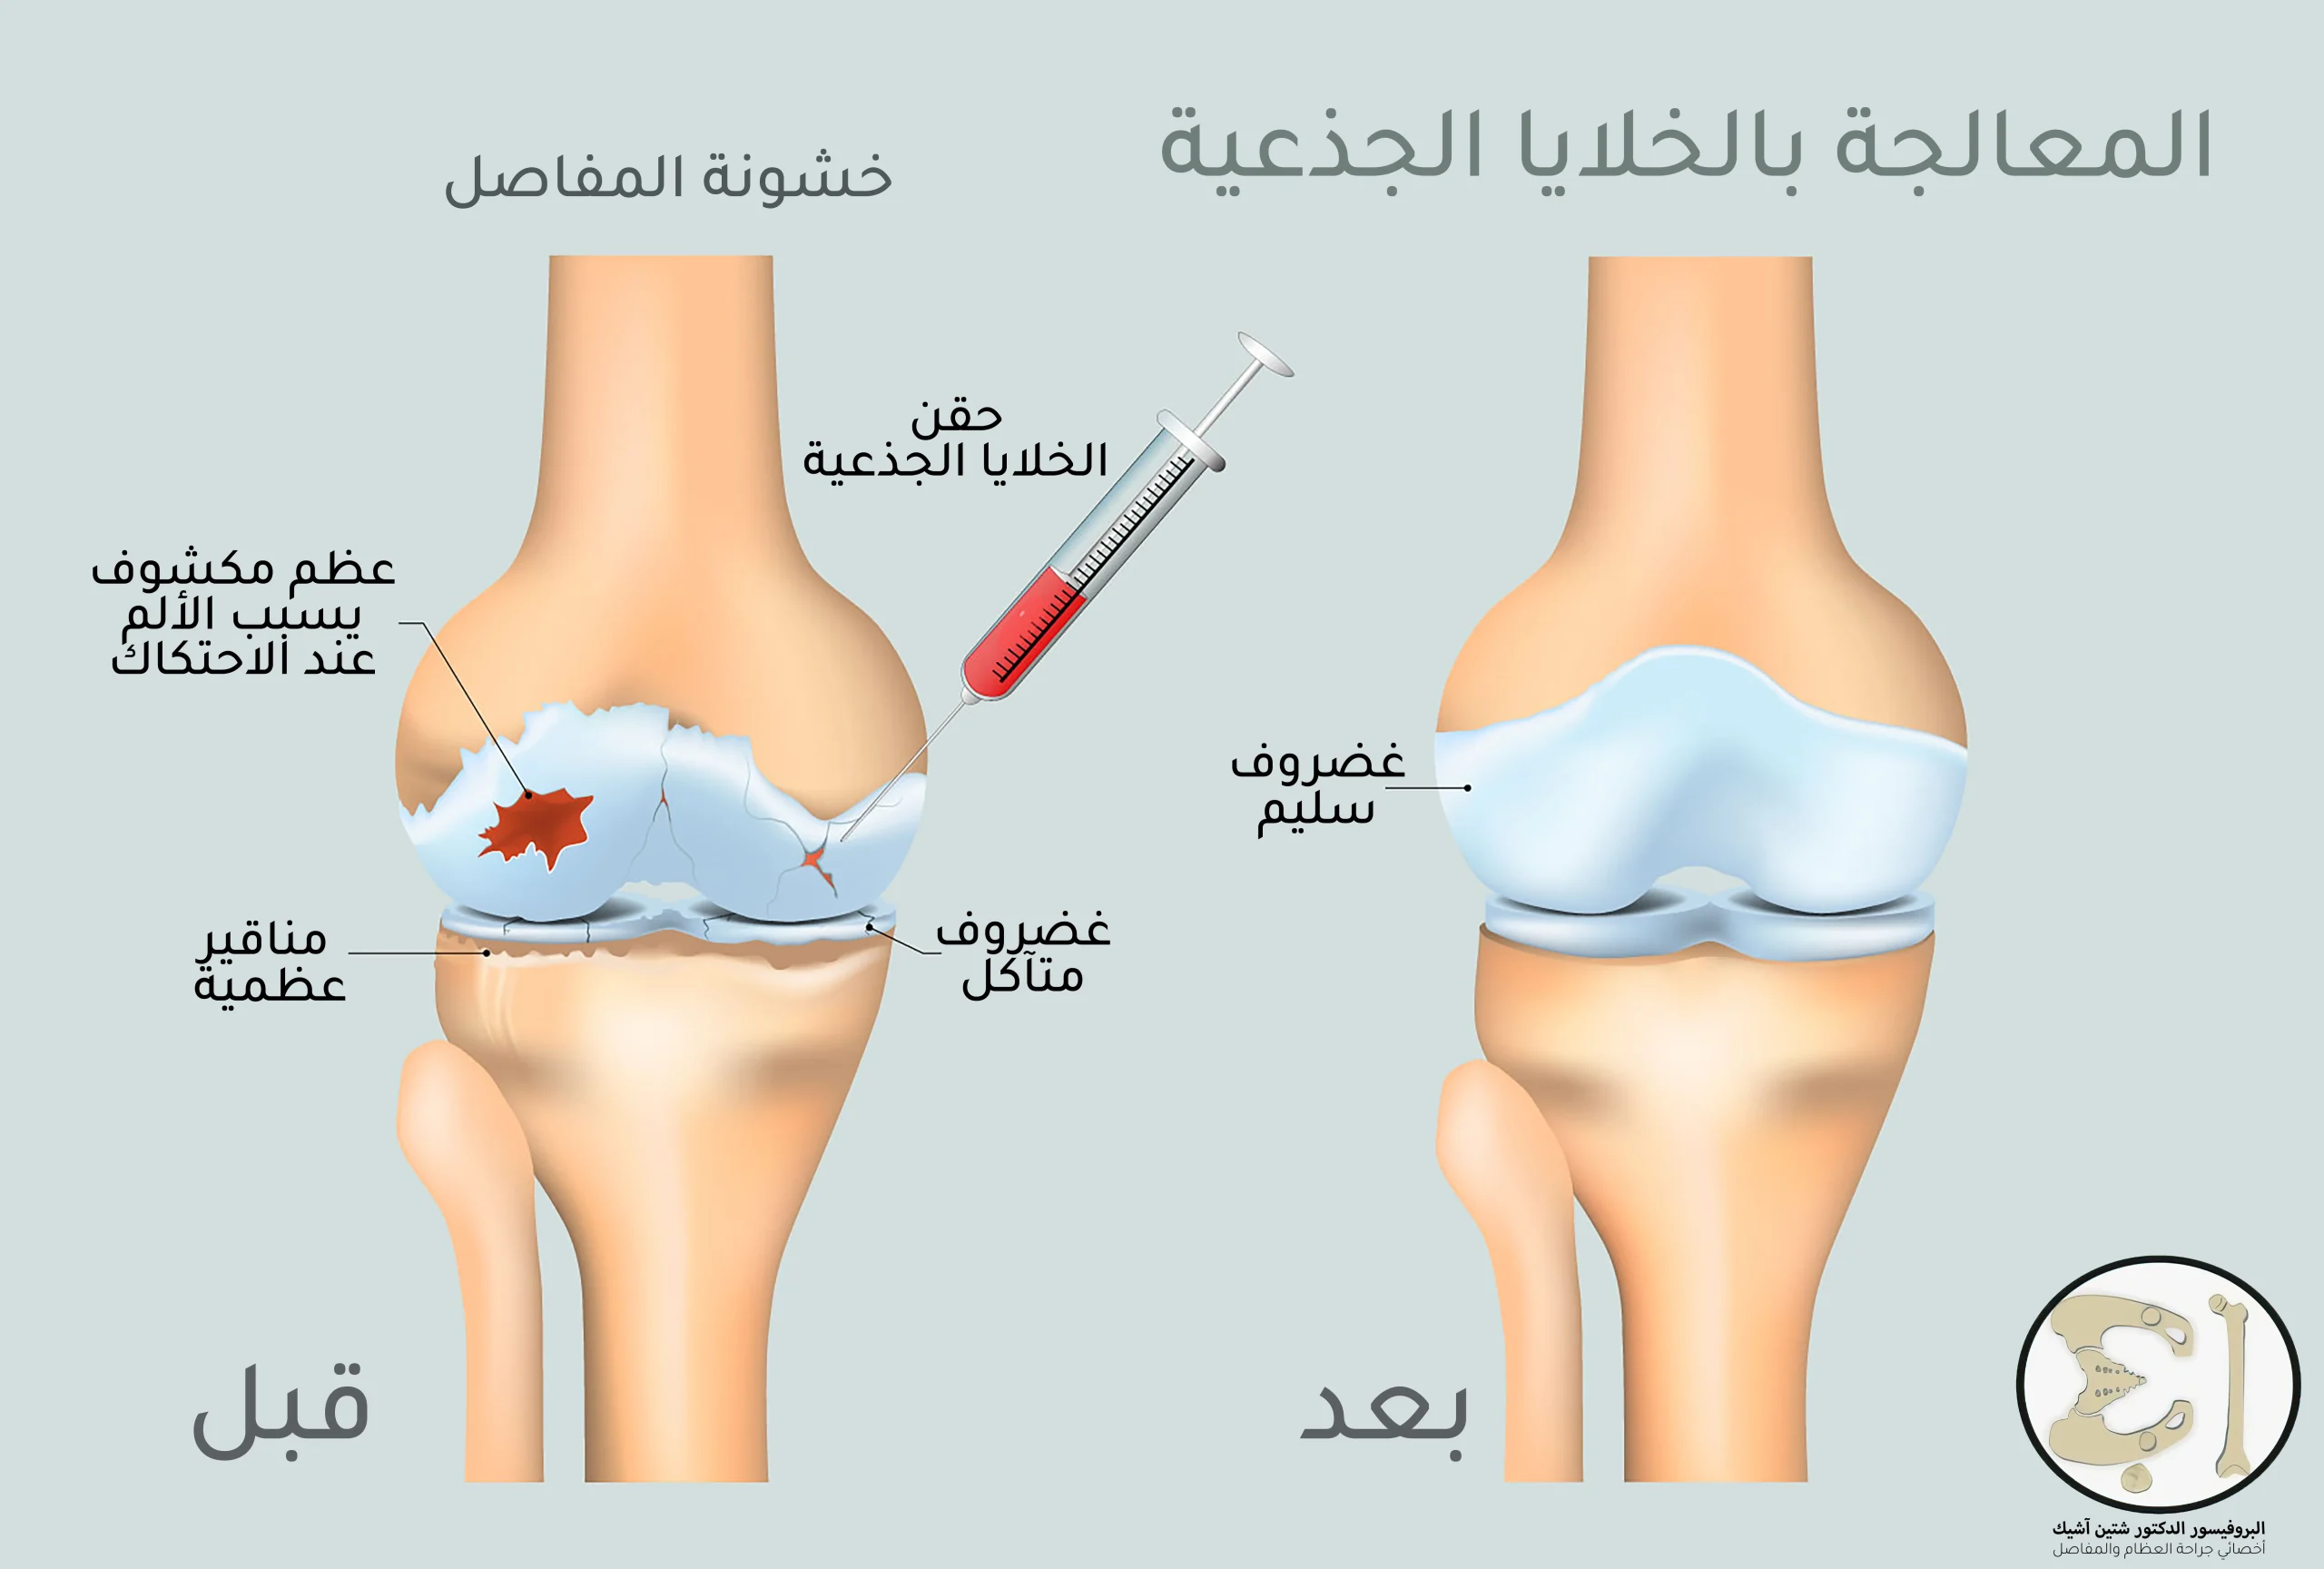 يتم علاج الركبة بالخلايا الجذعية بحقنها ضمن مفصل الركبة المتآكل لإنقاذ ما تبقى من الغضروف أو لإبطاء عملية التنكس